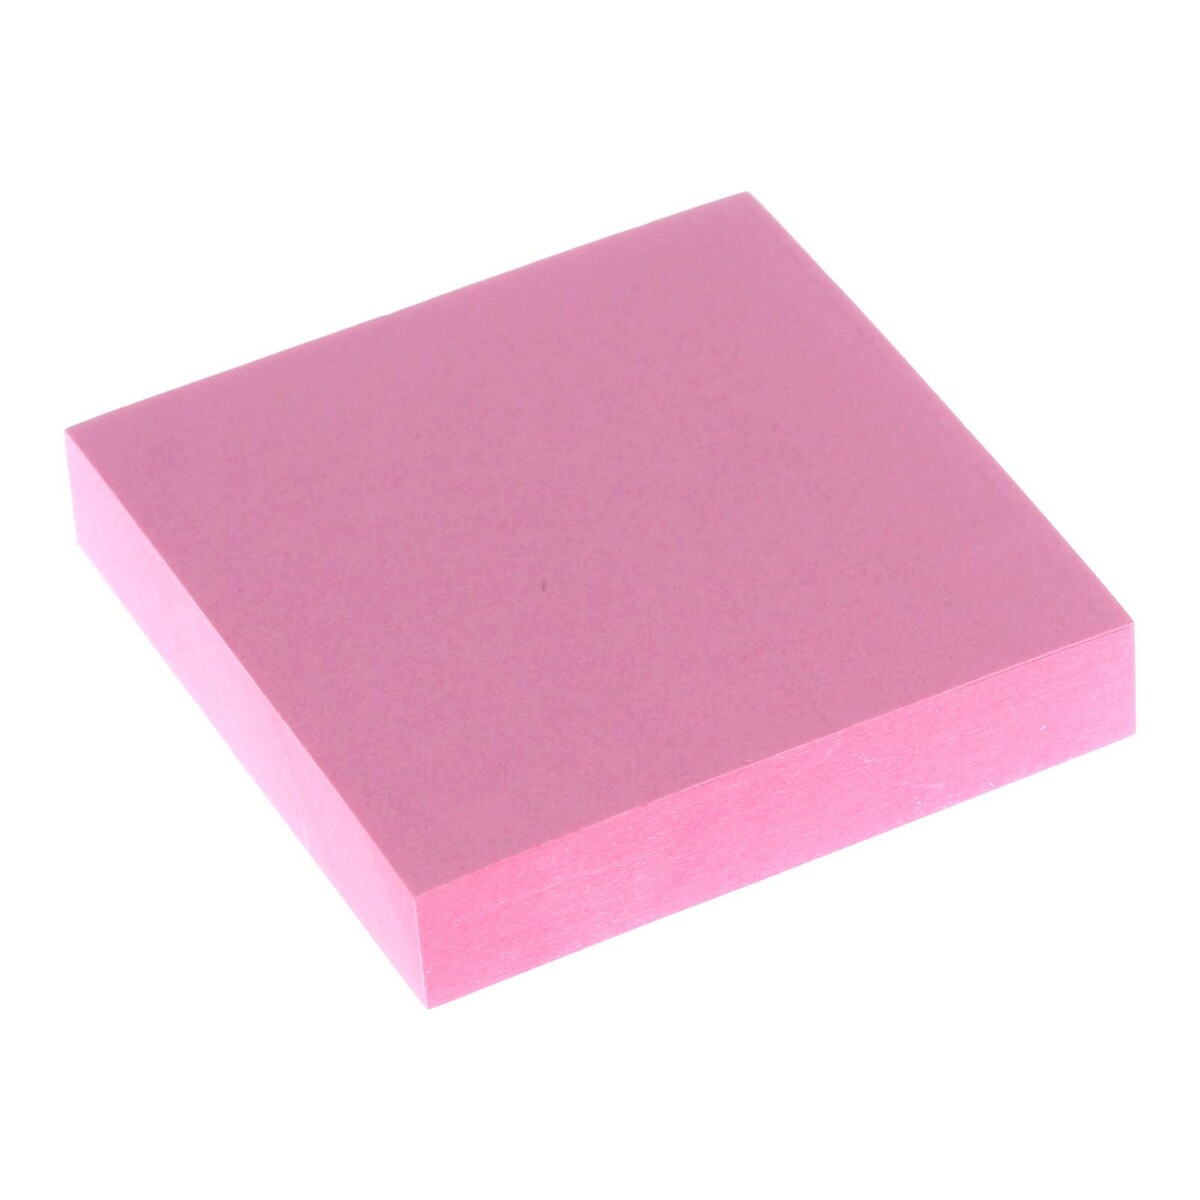 Блок с липким краем 51 мм х 51 мм, 100 листов, пастель, розовый блок с липким краем 51 мм х 51 мм 100 листов пастель розовый